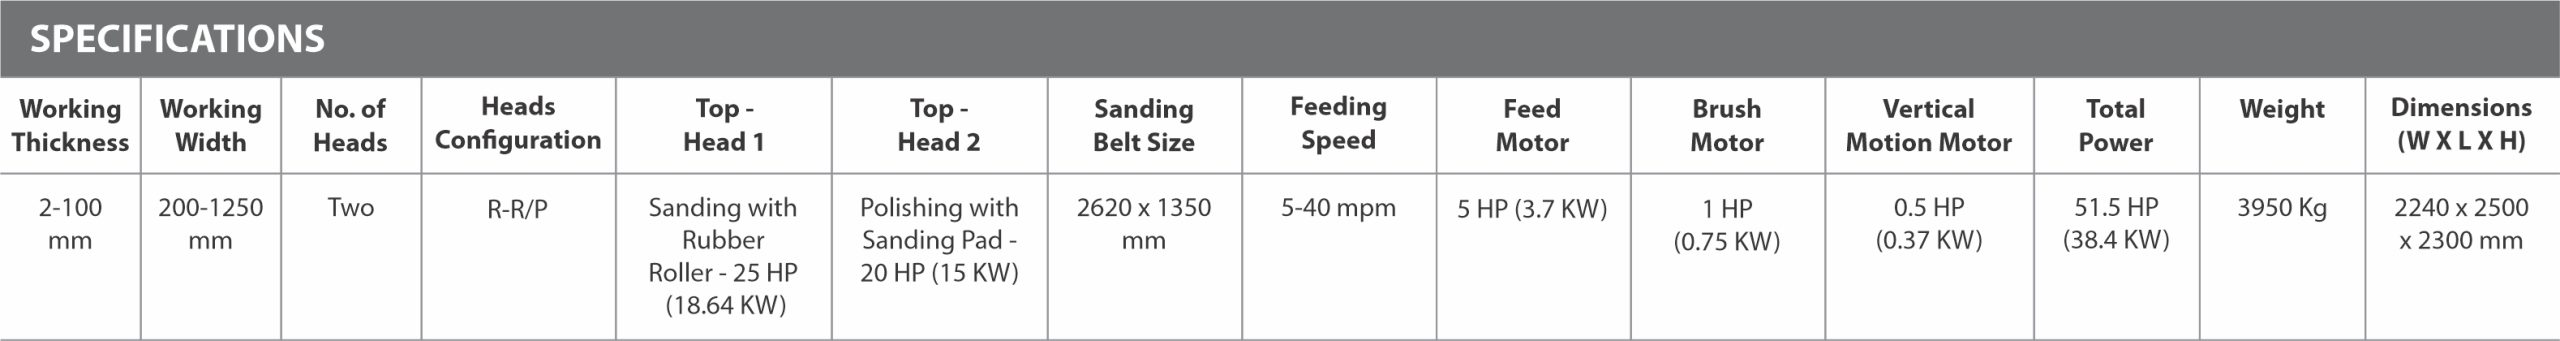 Double Head Belt Sanding Machine Top - Zedsan 4126 DS - Specifications